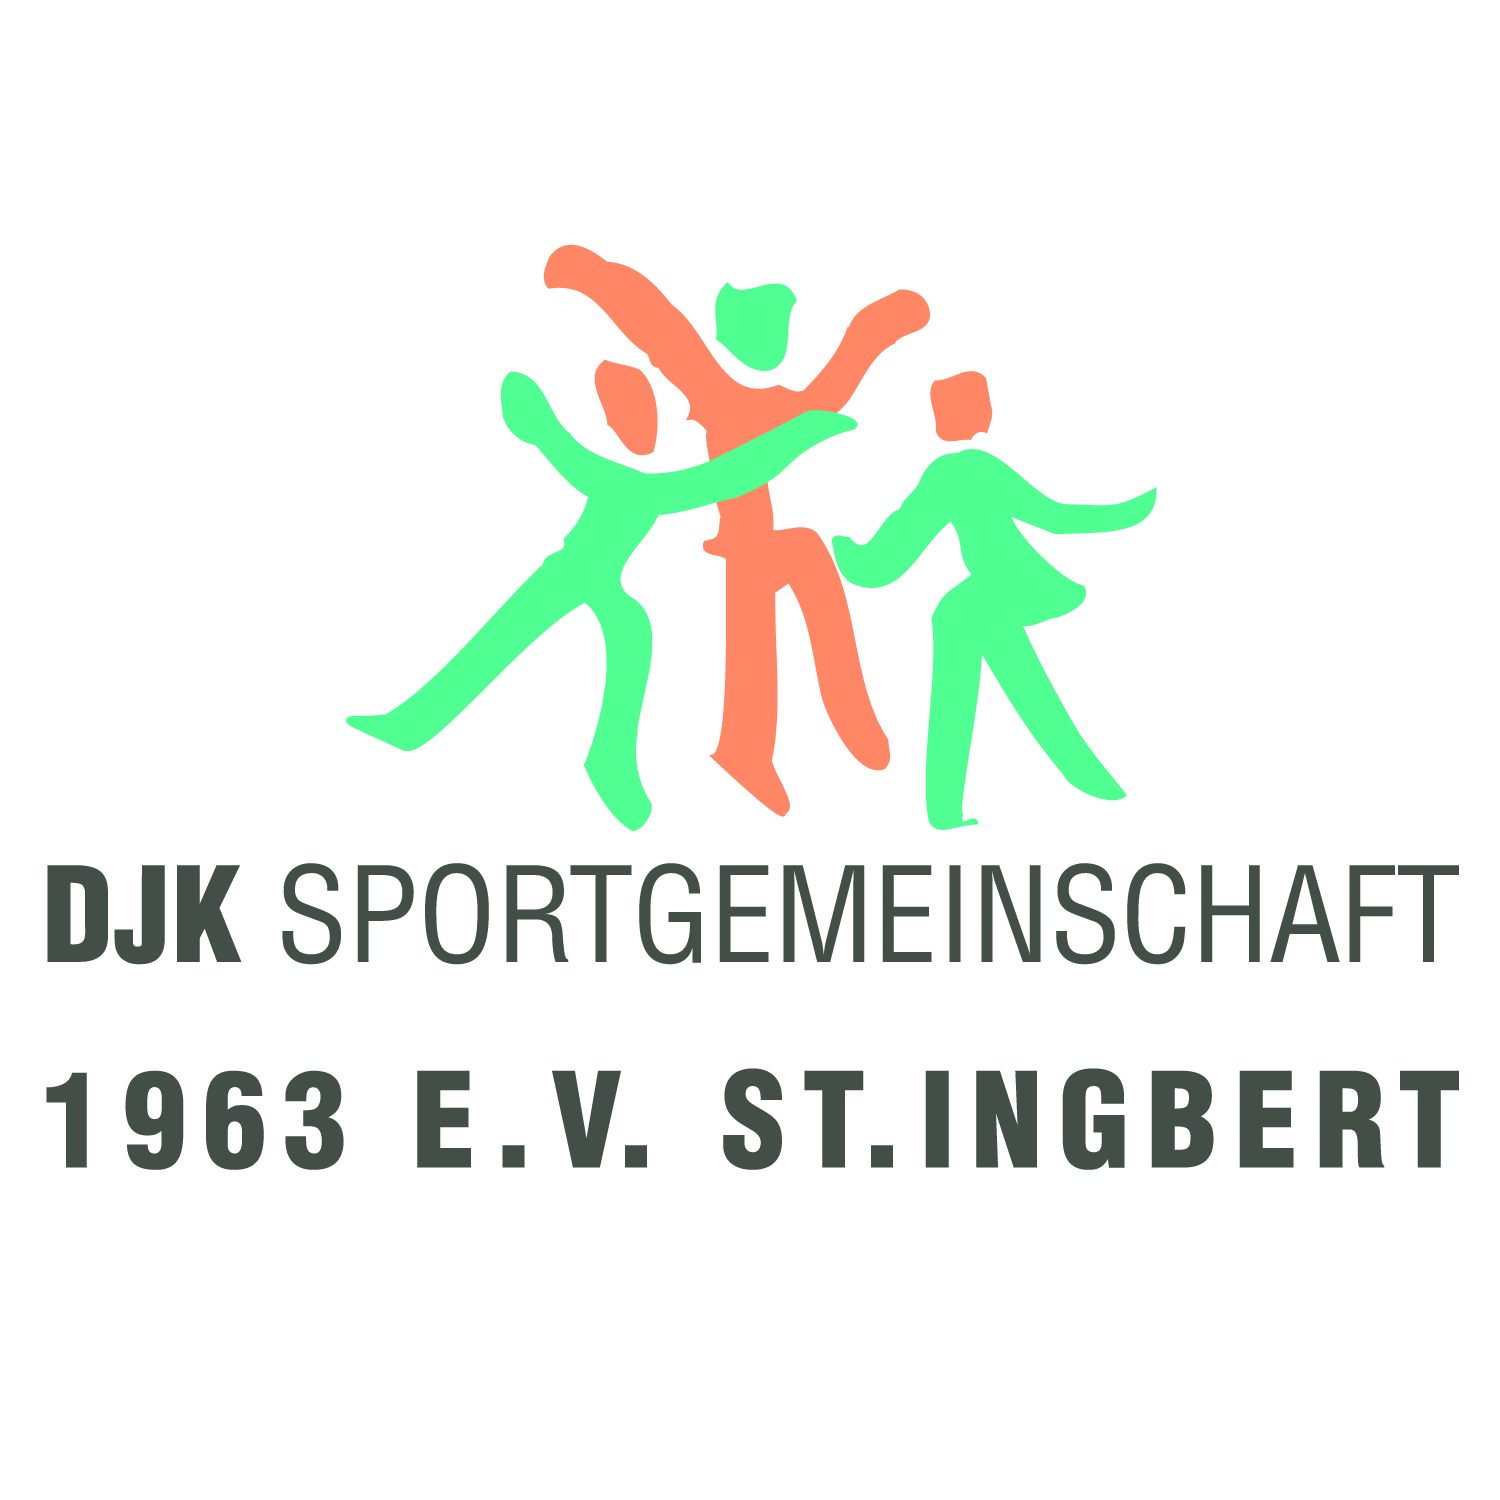 DJK Sportgemeinschaft blickt auf das Jahr 2022 zurück